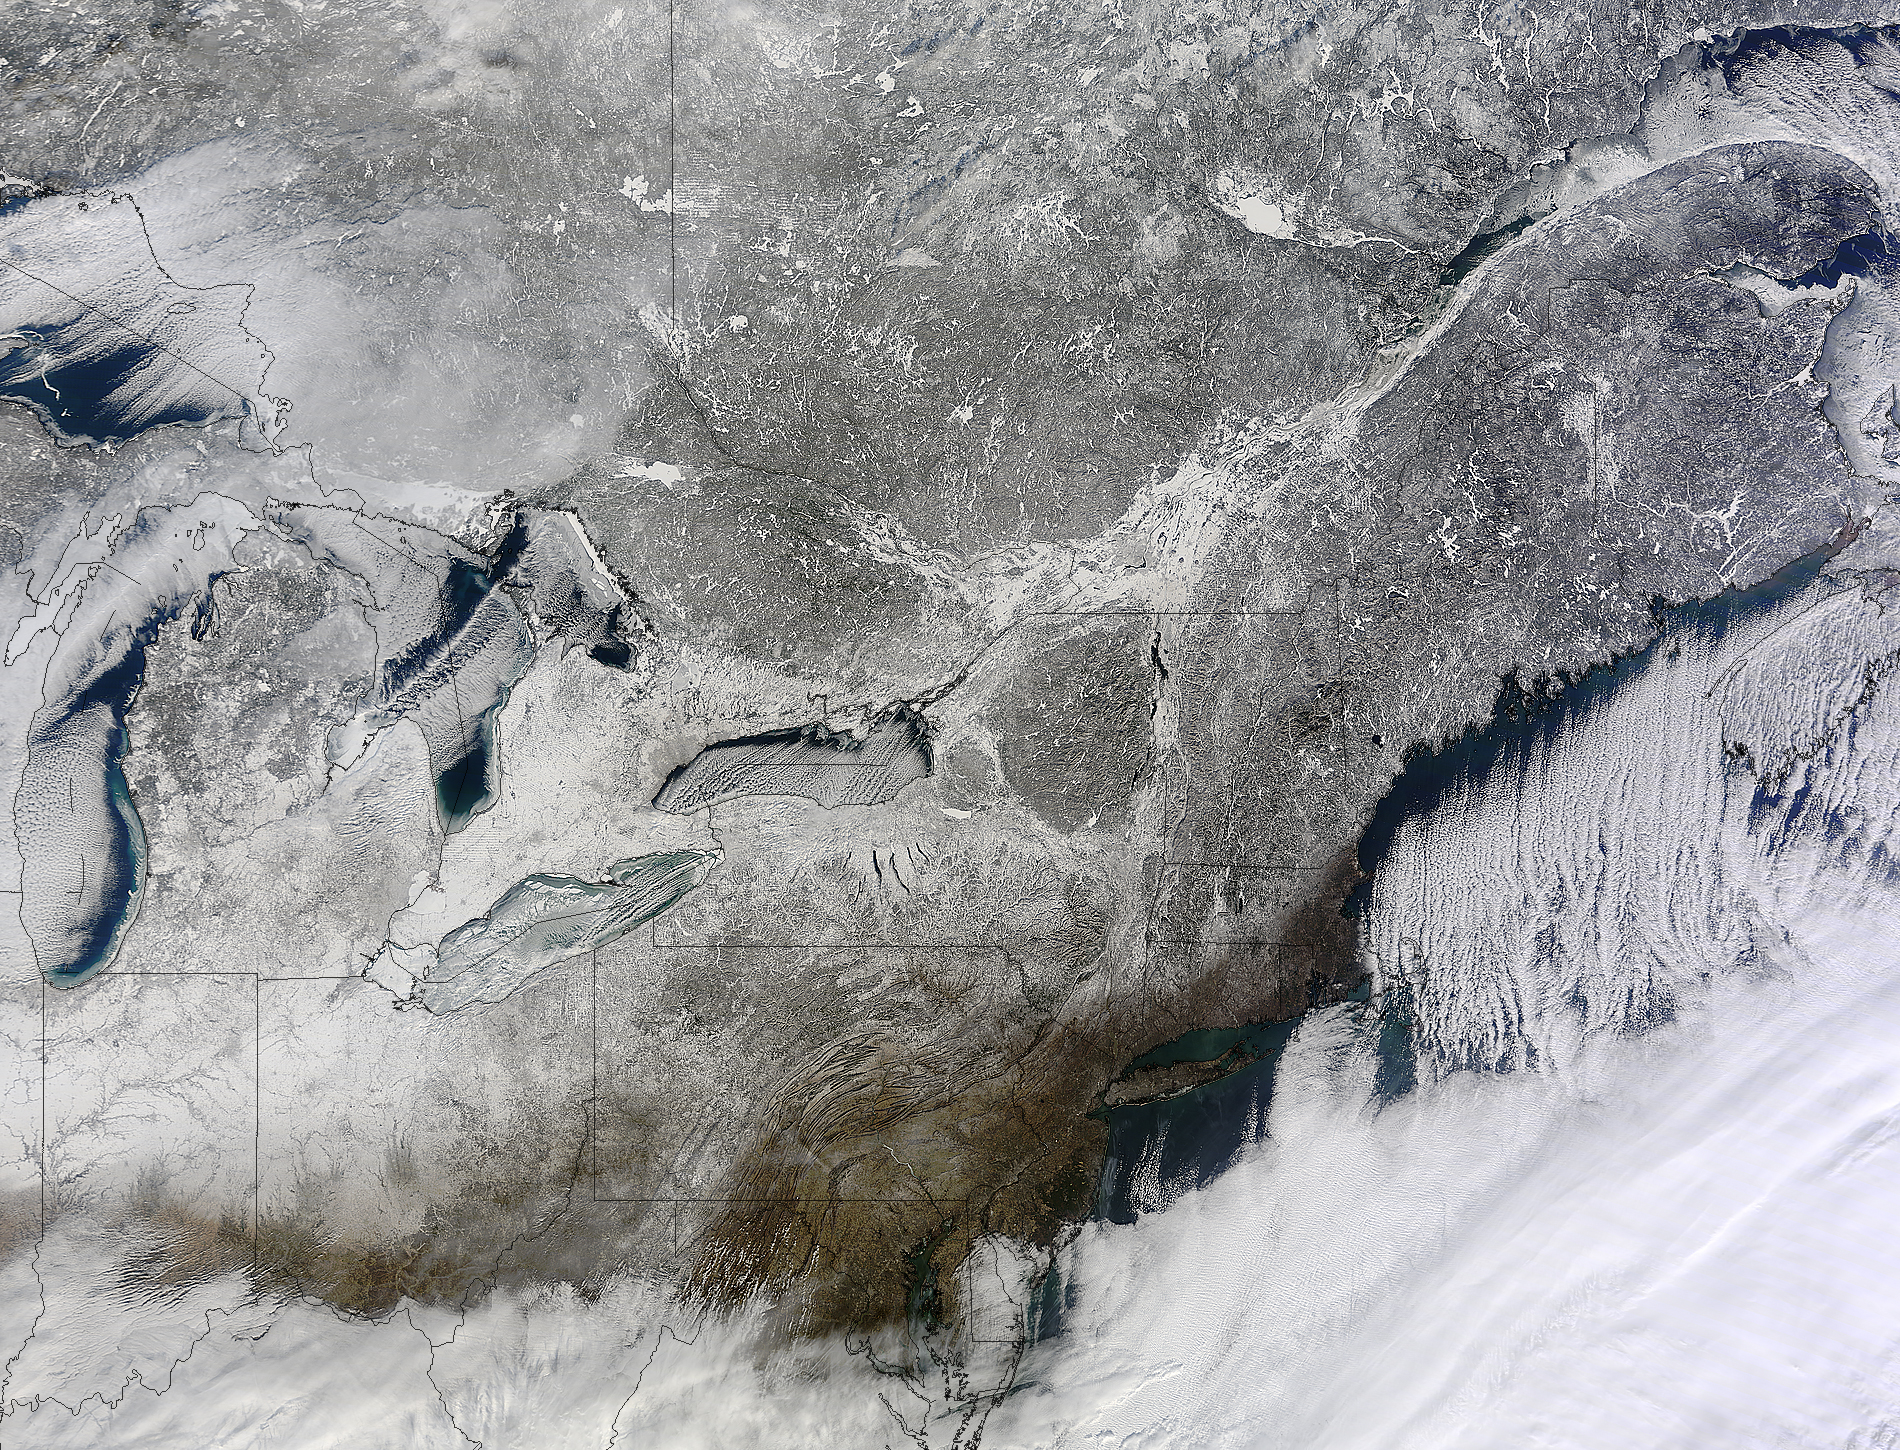 Снимки со спутника зимой